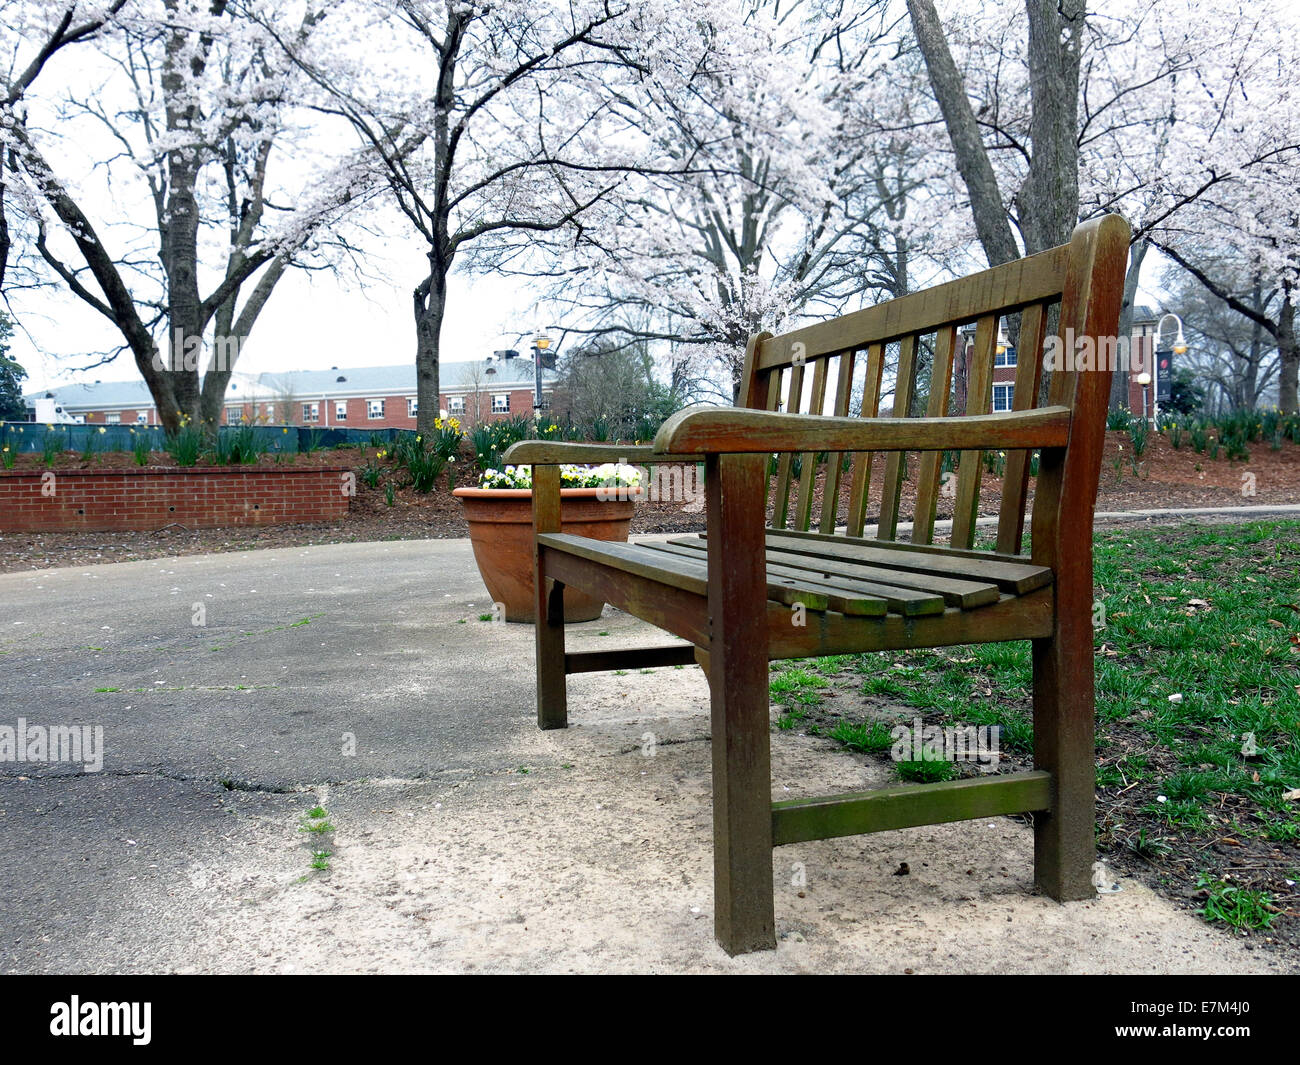 Lonely banco in un parco con alberi in fiore in background Foto Stock